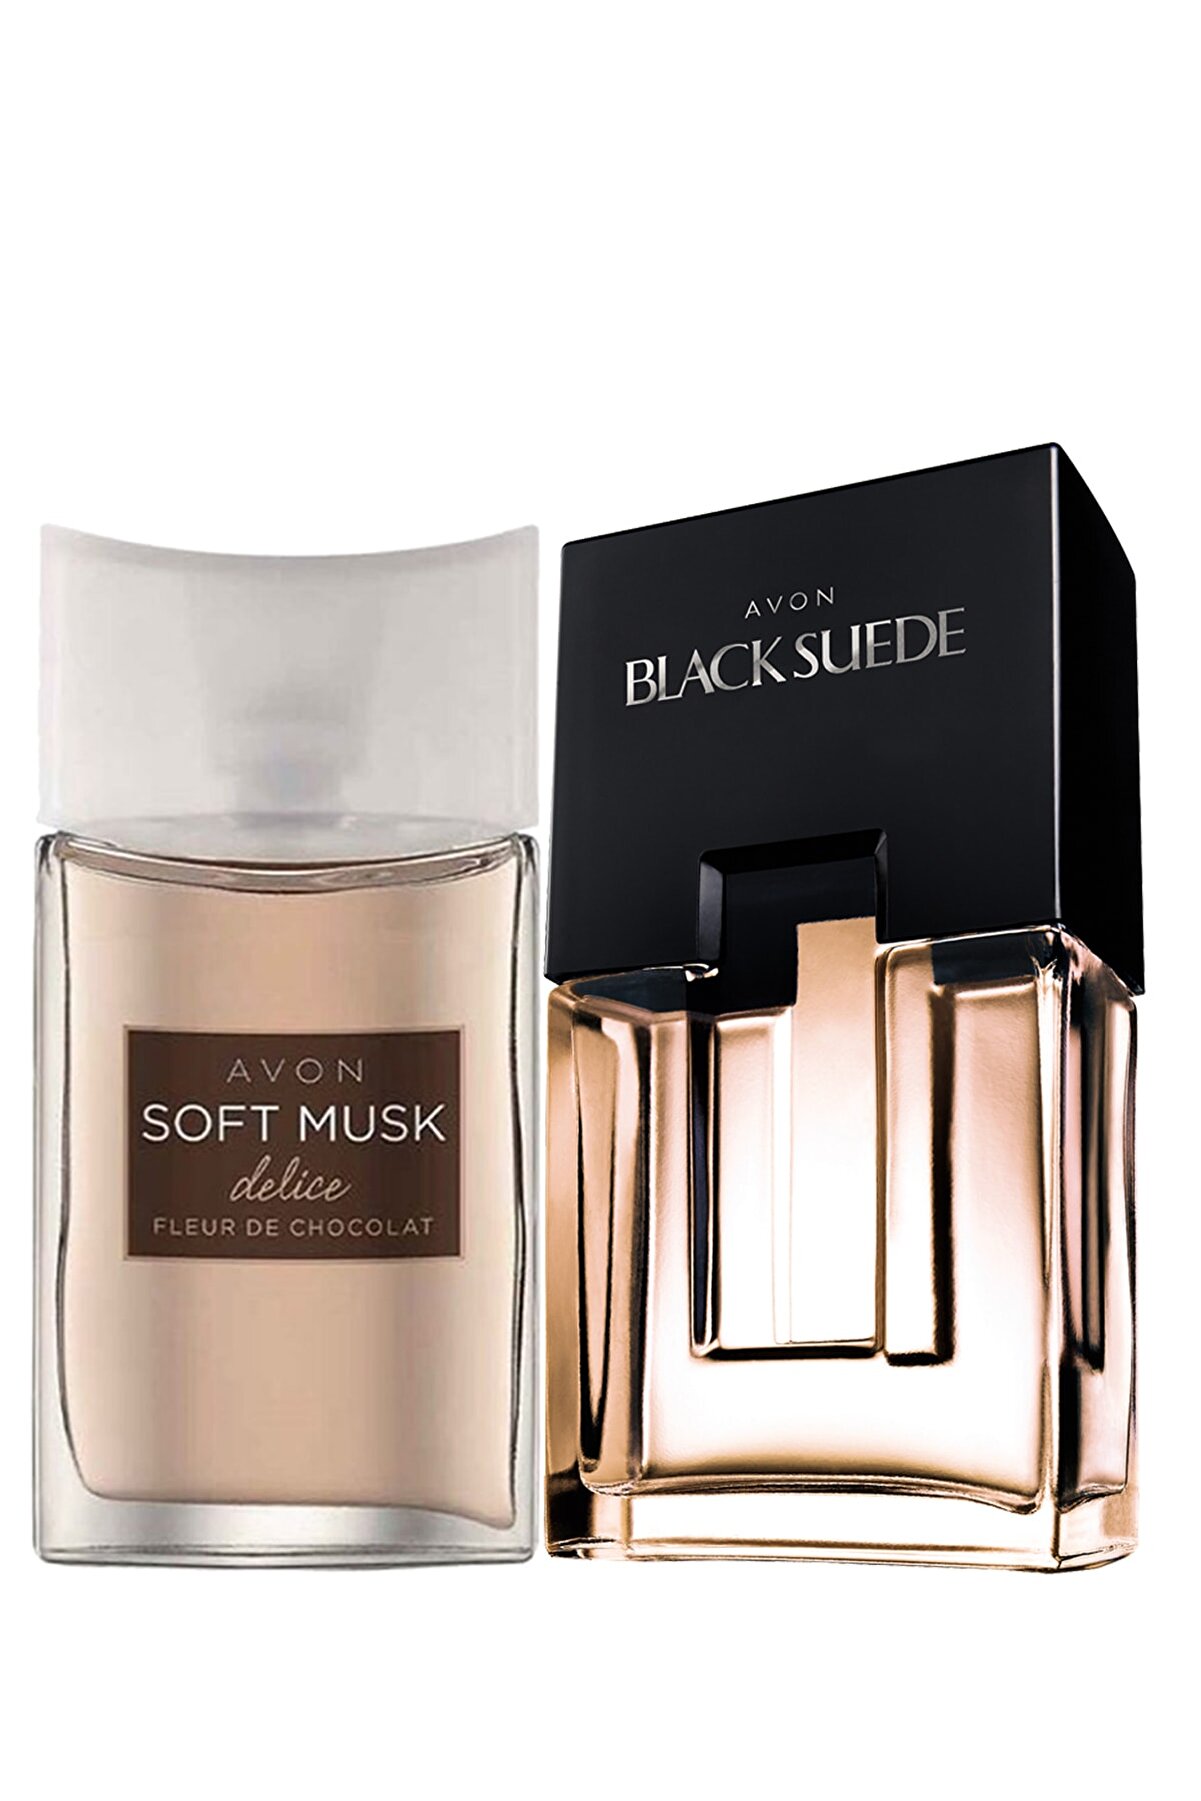 Avon Black Suede Erkek Parfüm Ve Soft Musk Delice Kadın Parfüm